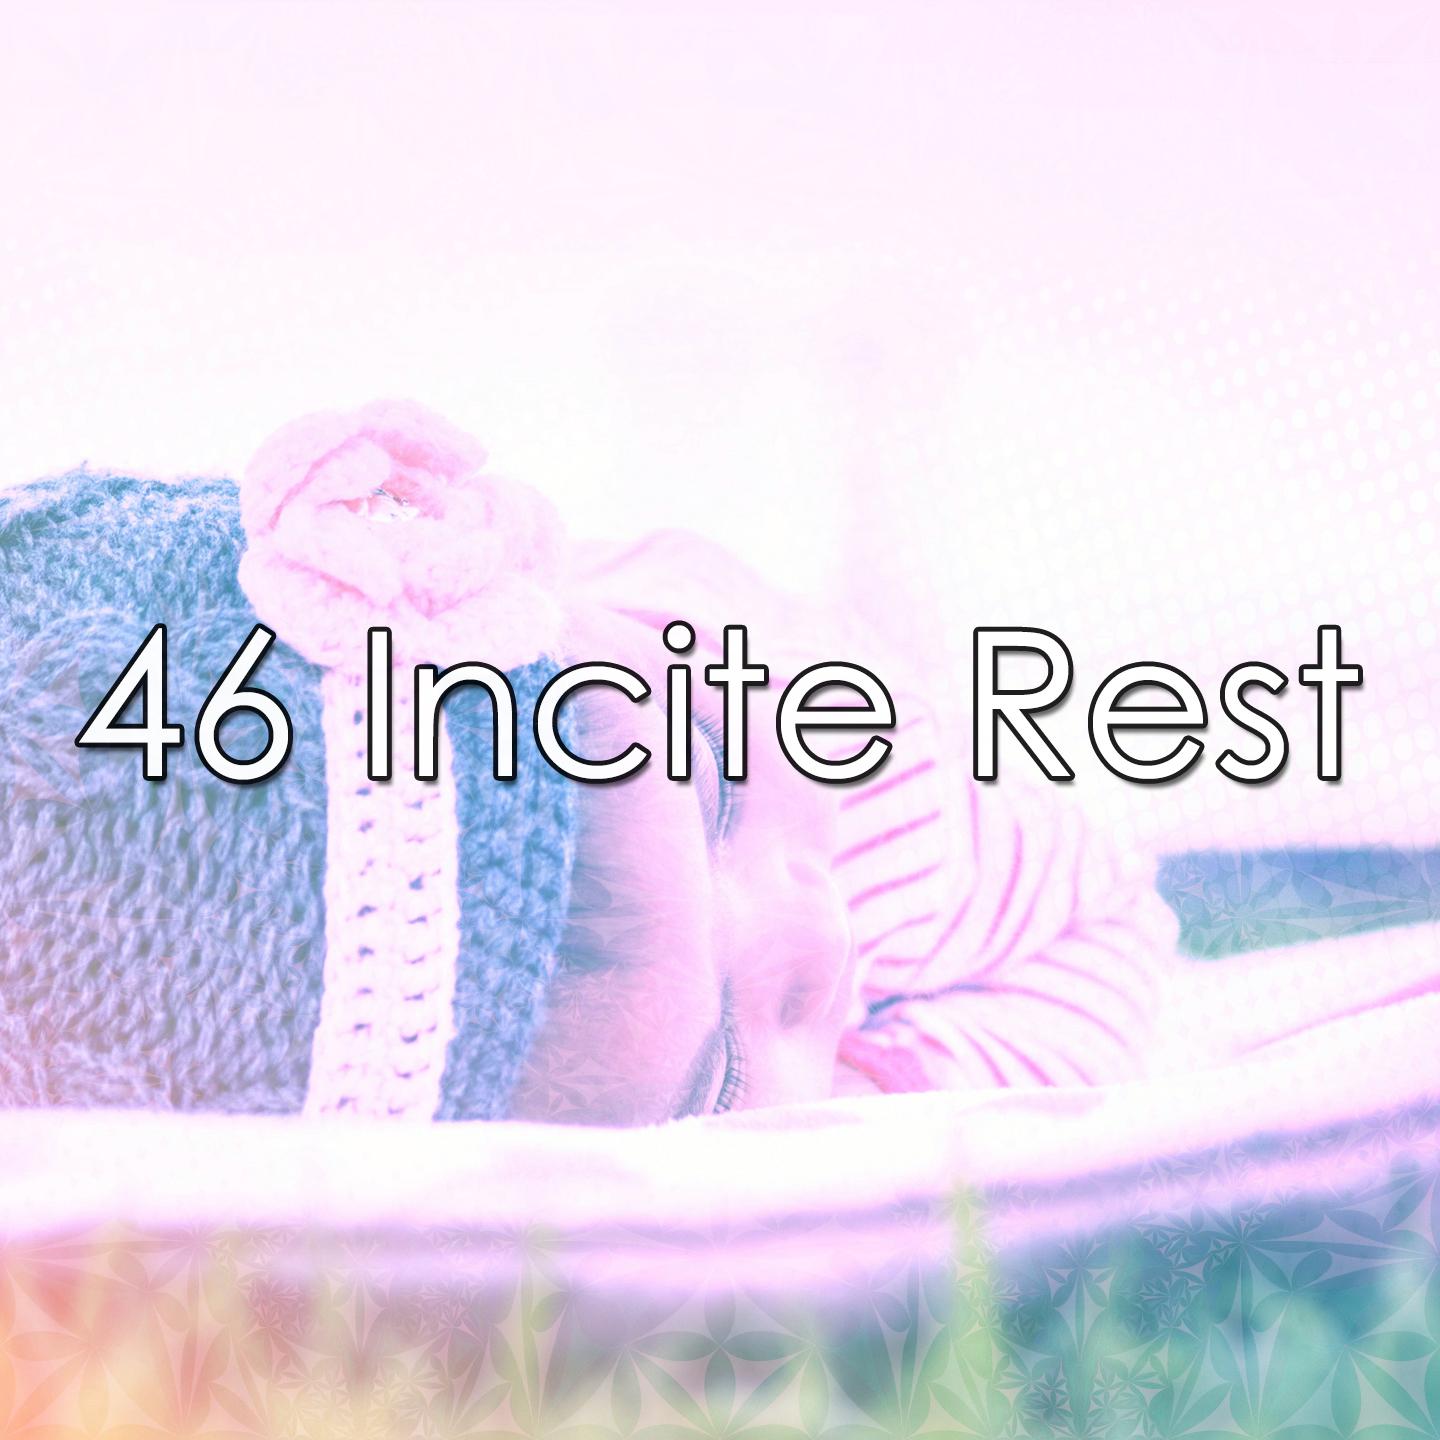 46 Incite Rest